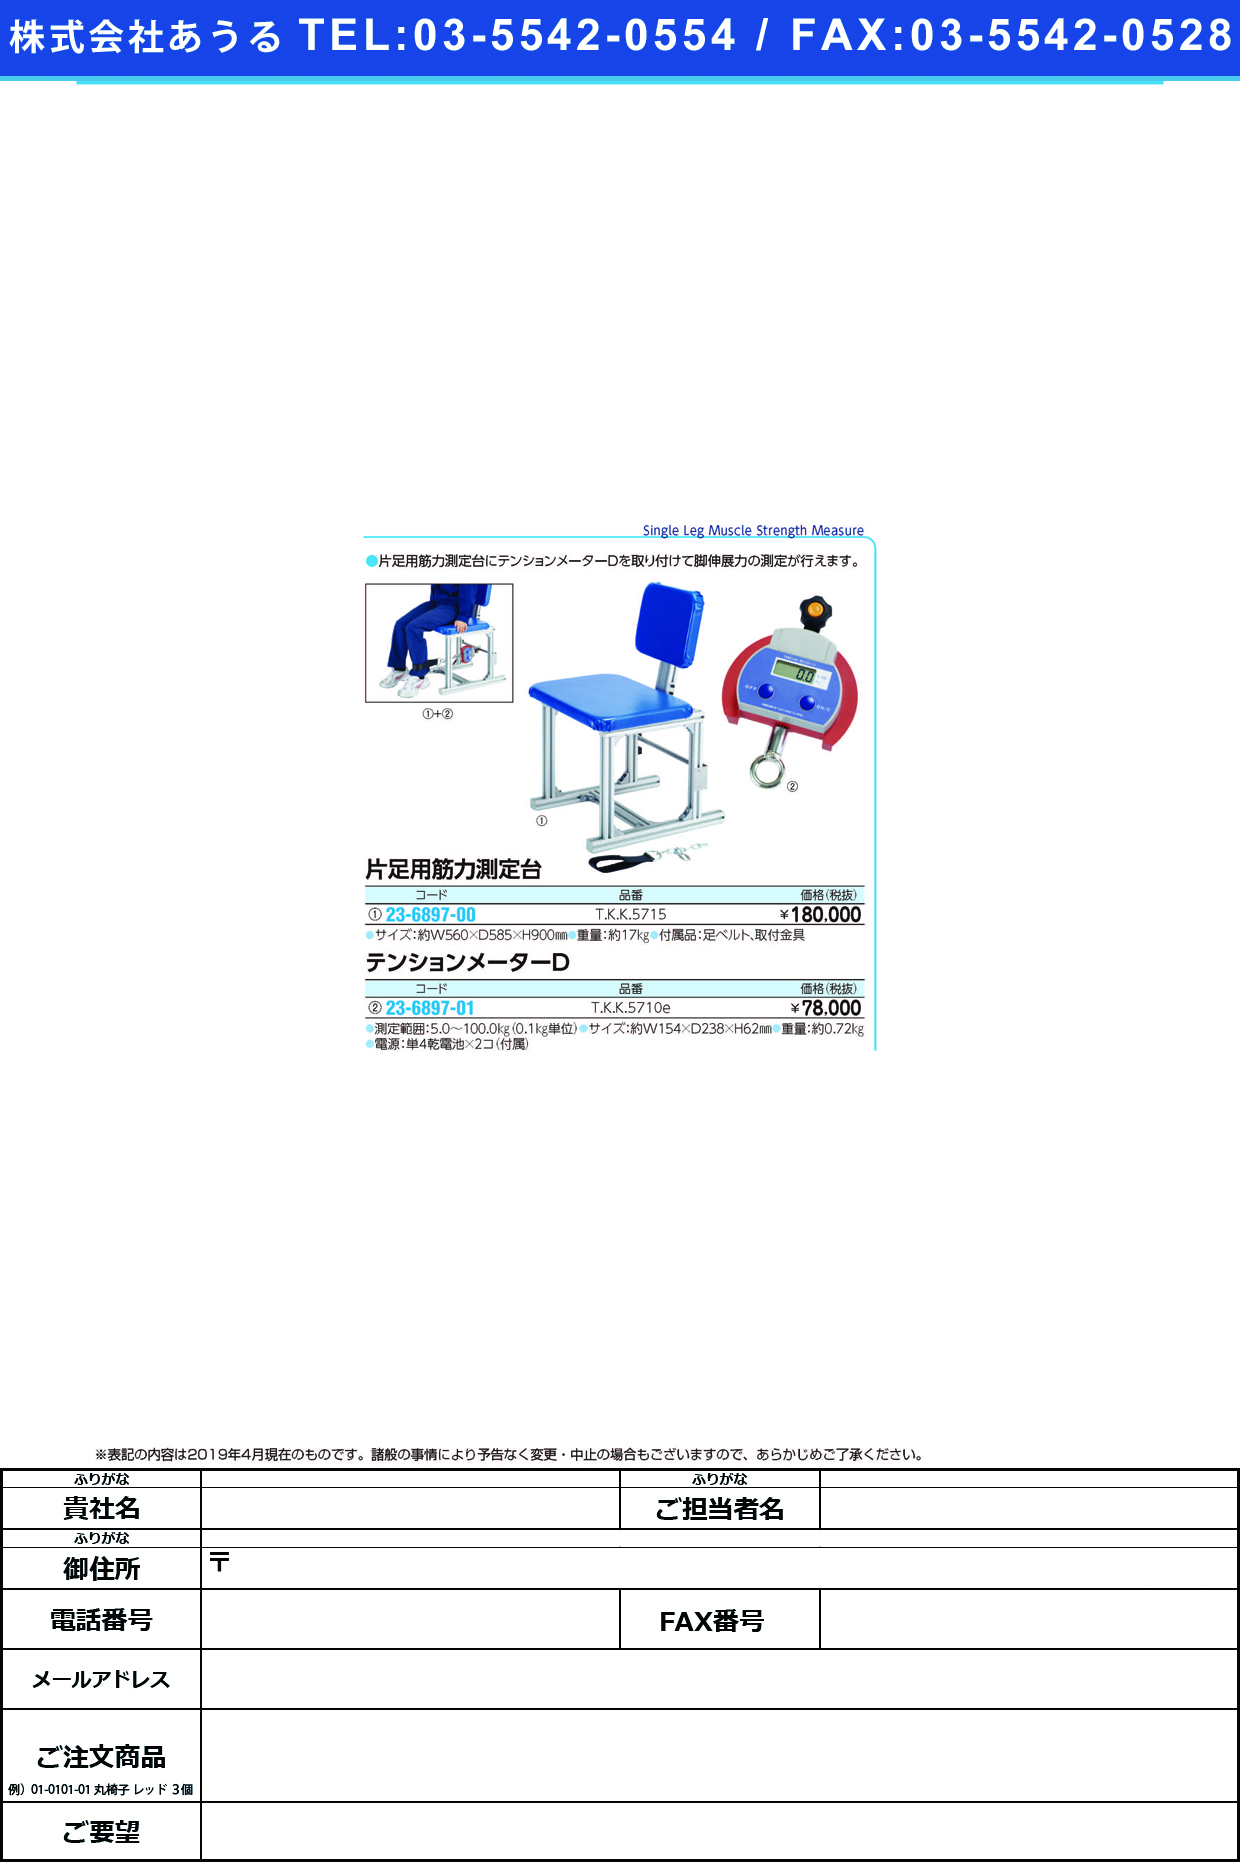 (23-6897-01)テンションメーターＤ TKK-5710E ﾃﾝｼｮﾝﾒｰﾀｰD(竹井機器工業)【1台単位】【2019年カタログ商品】